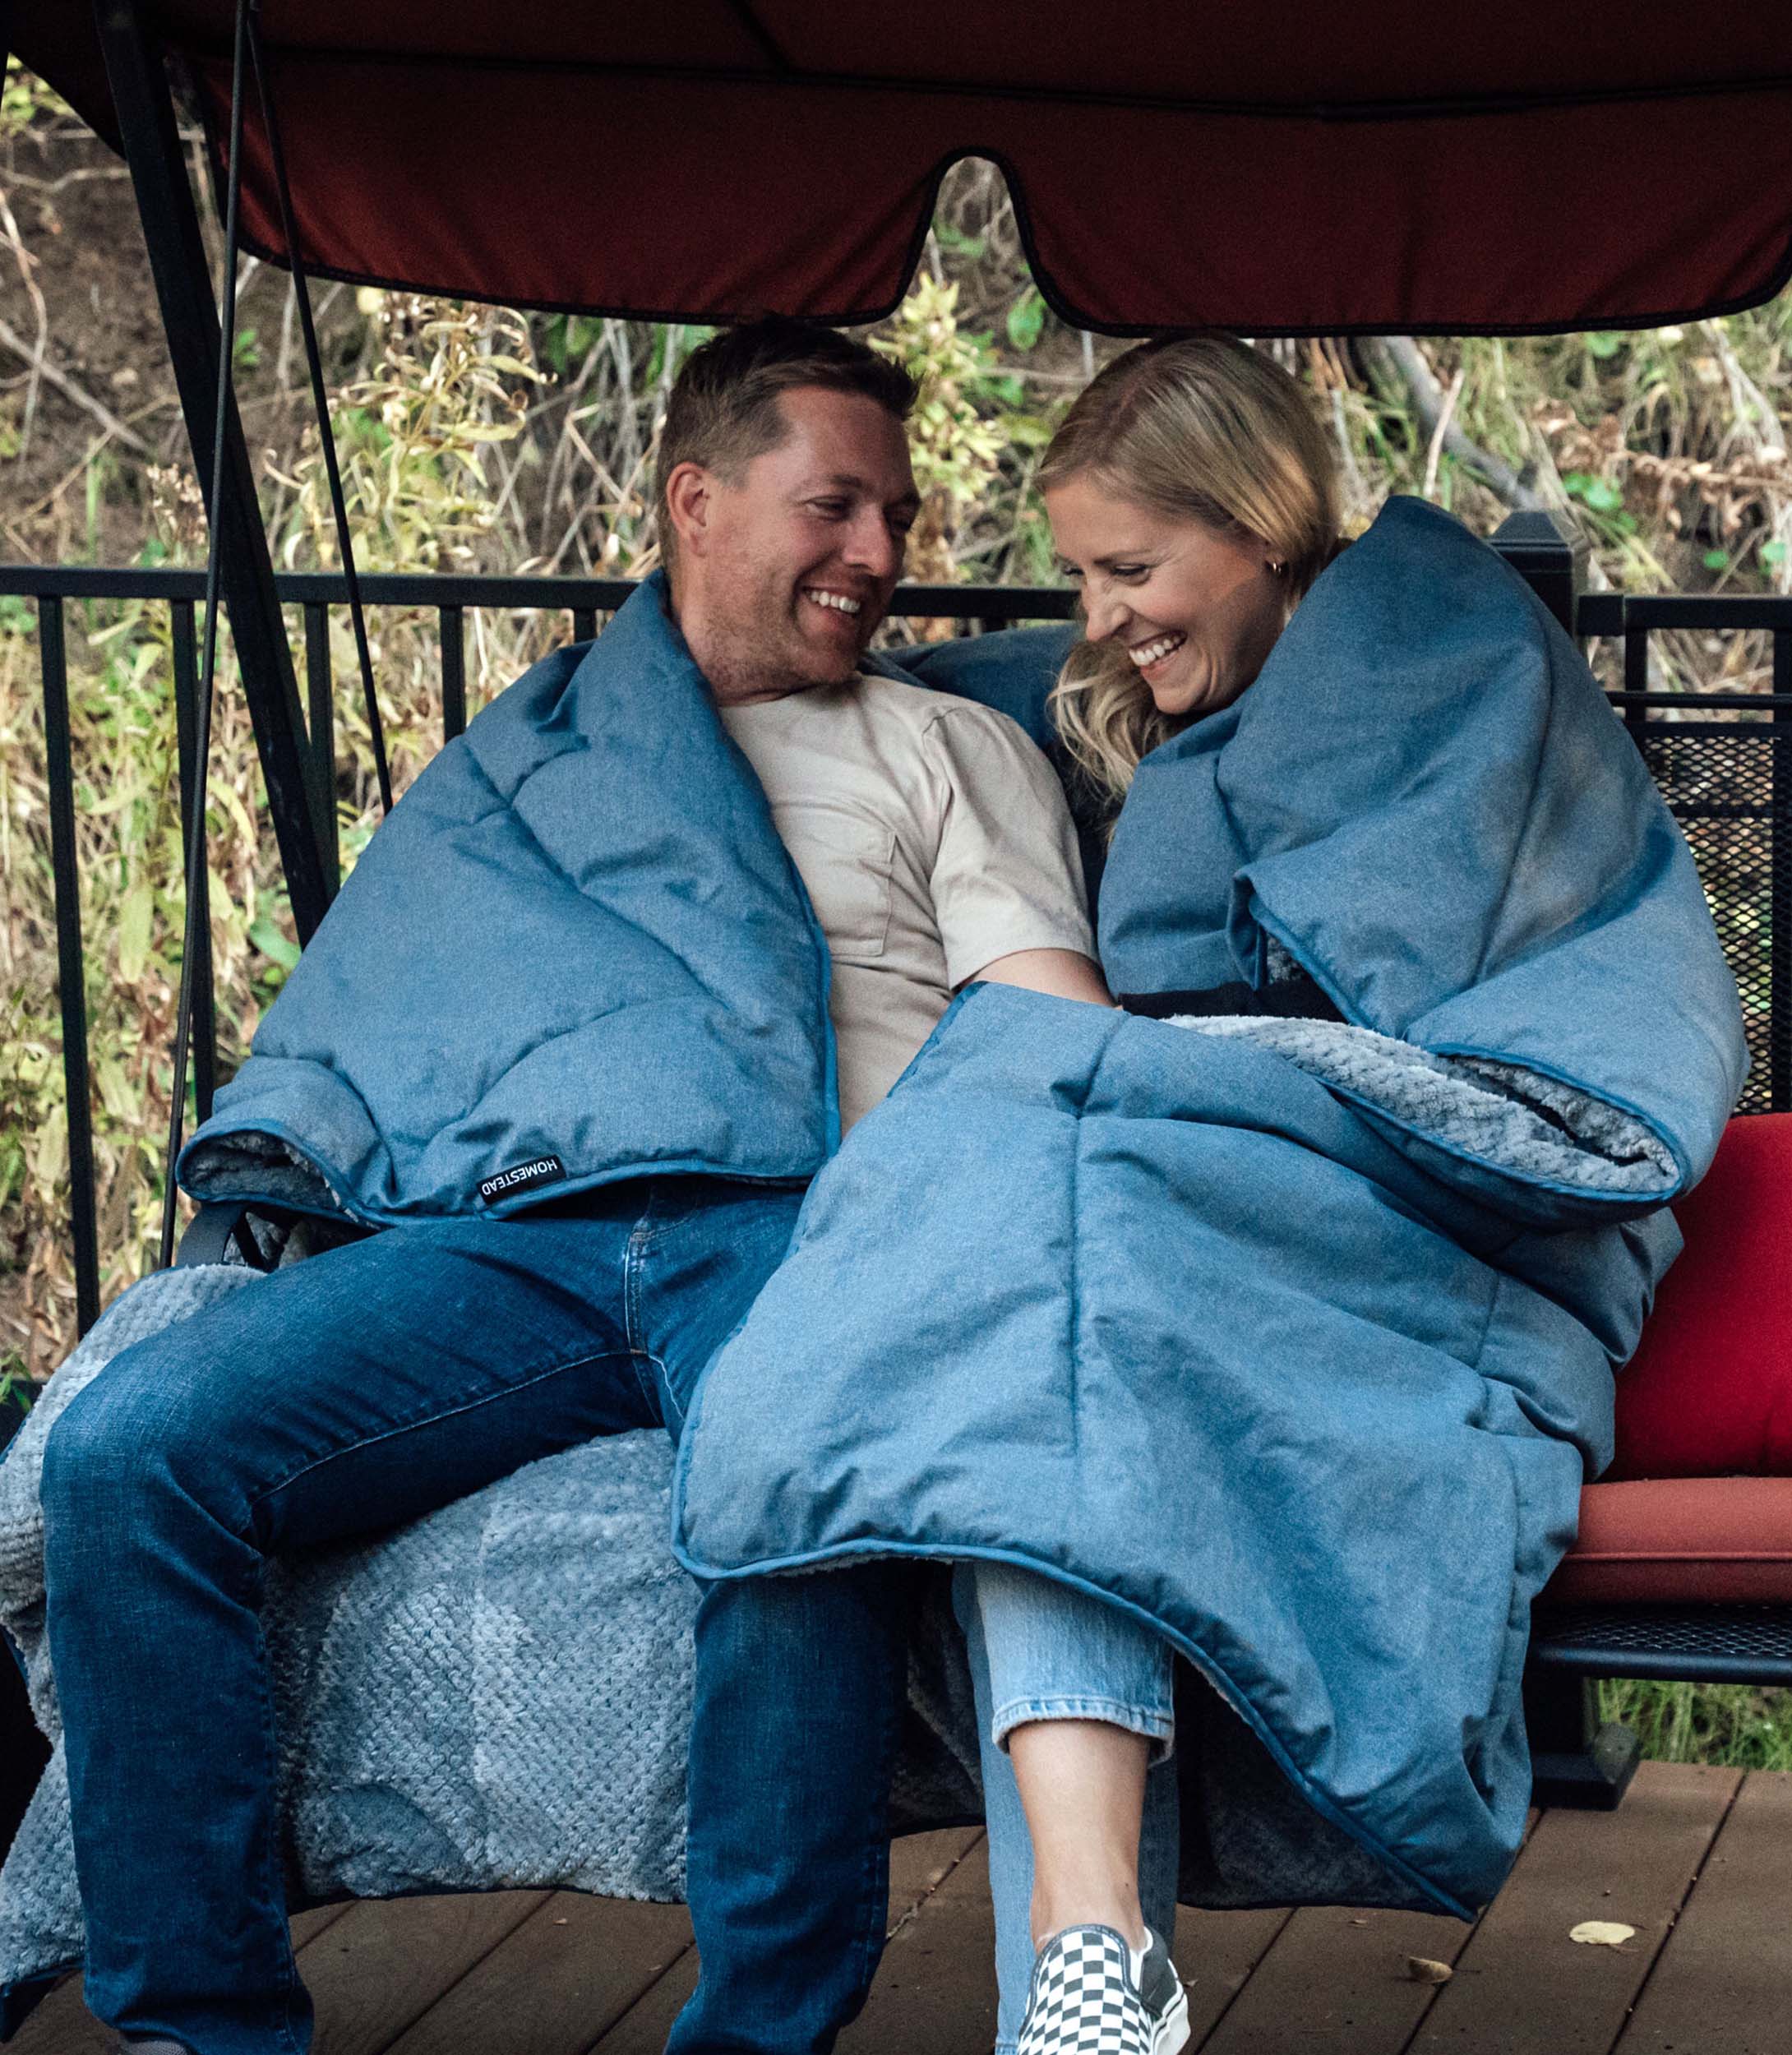 Homestead Cabin Comforter Decke - 2 Personen